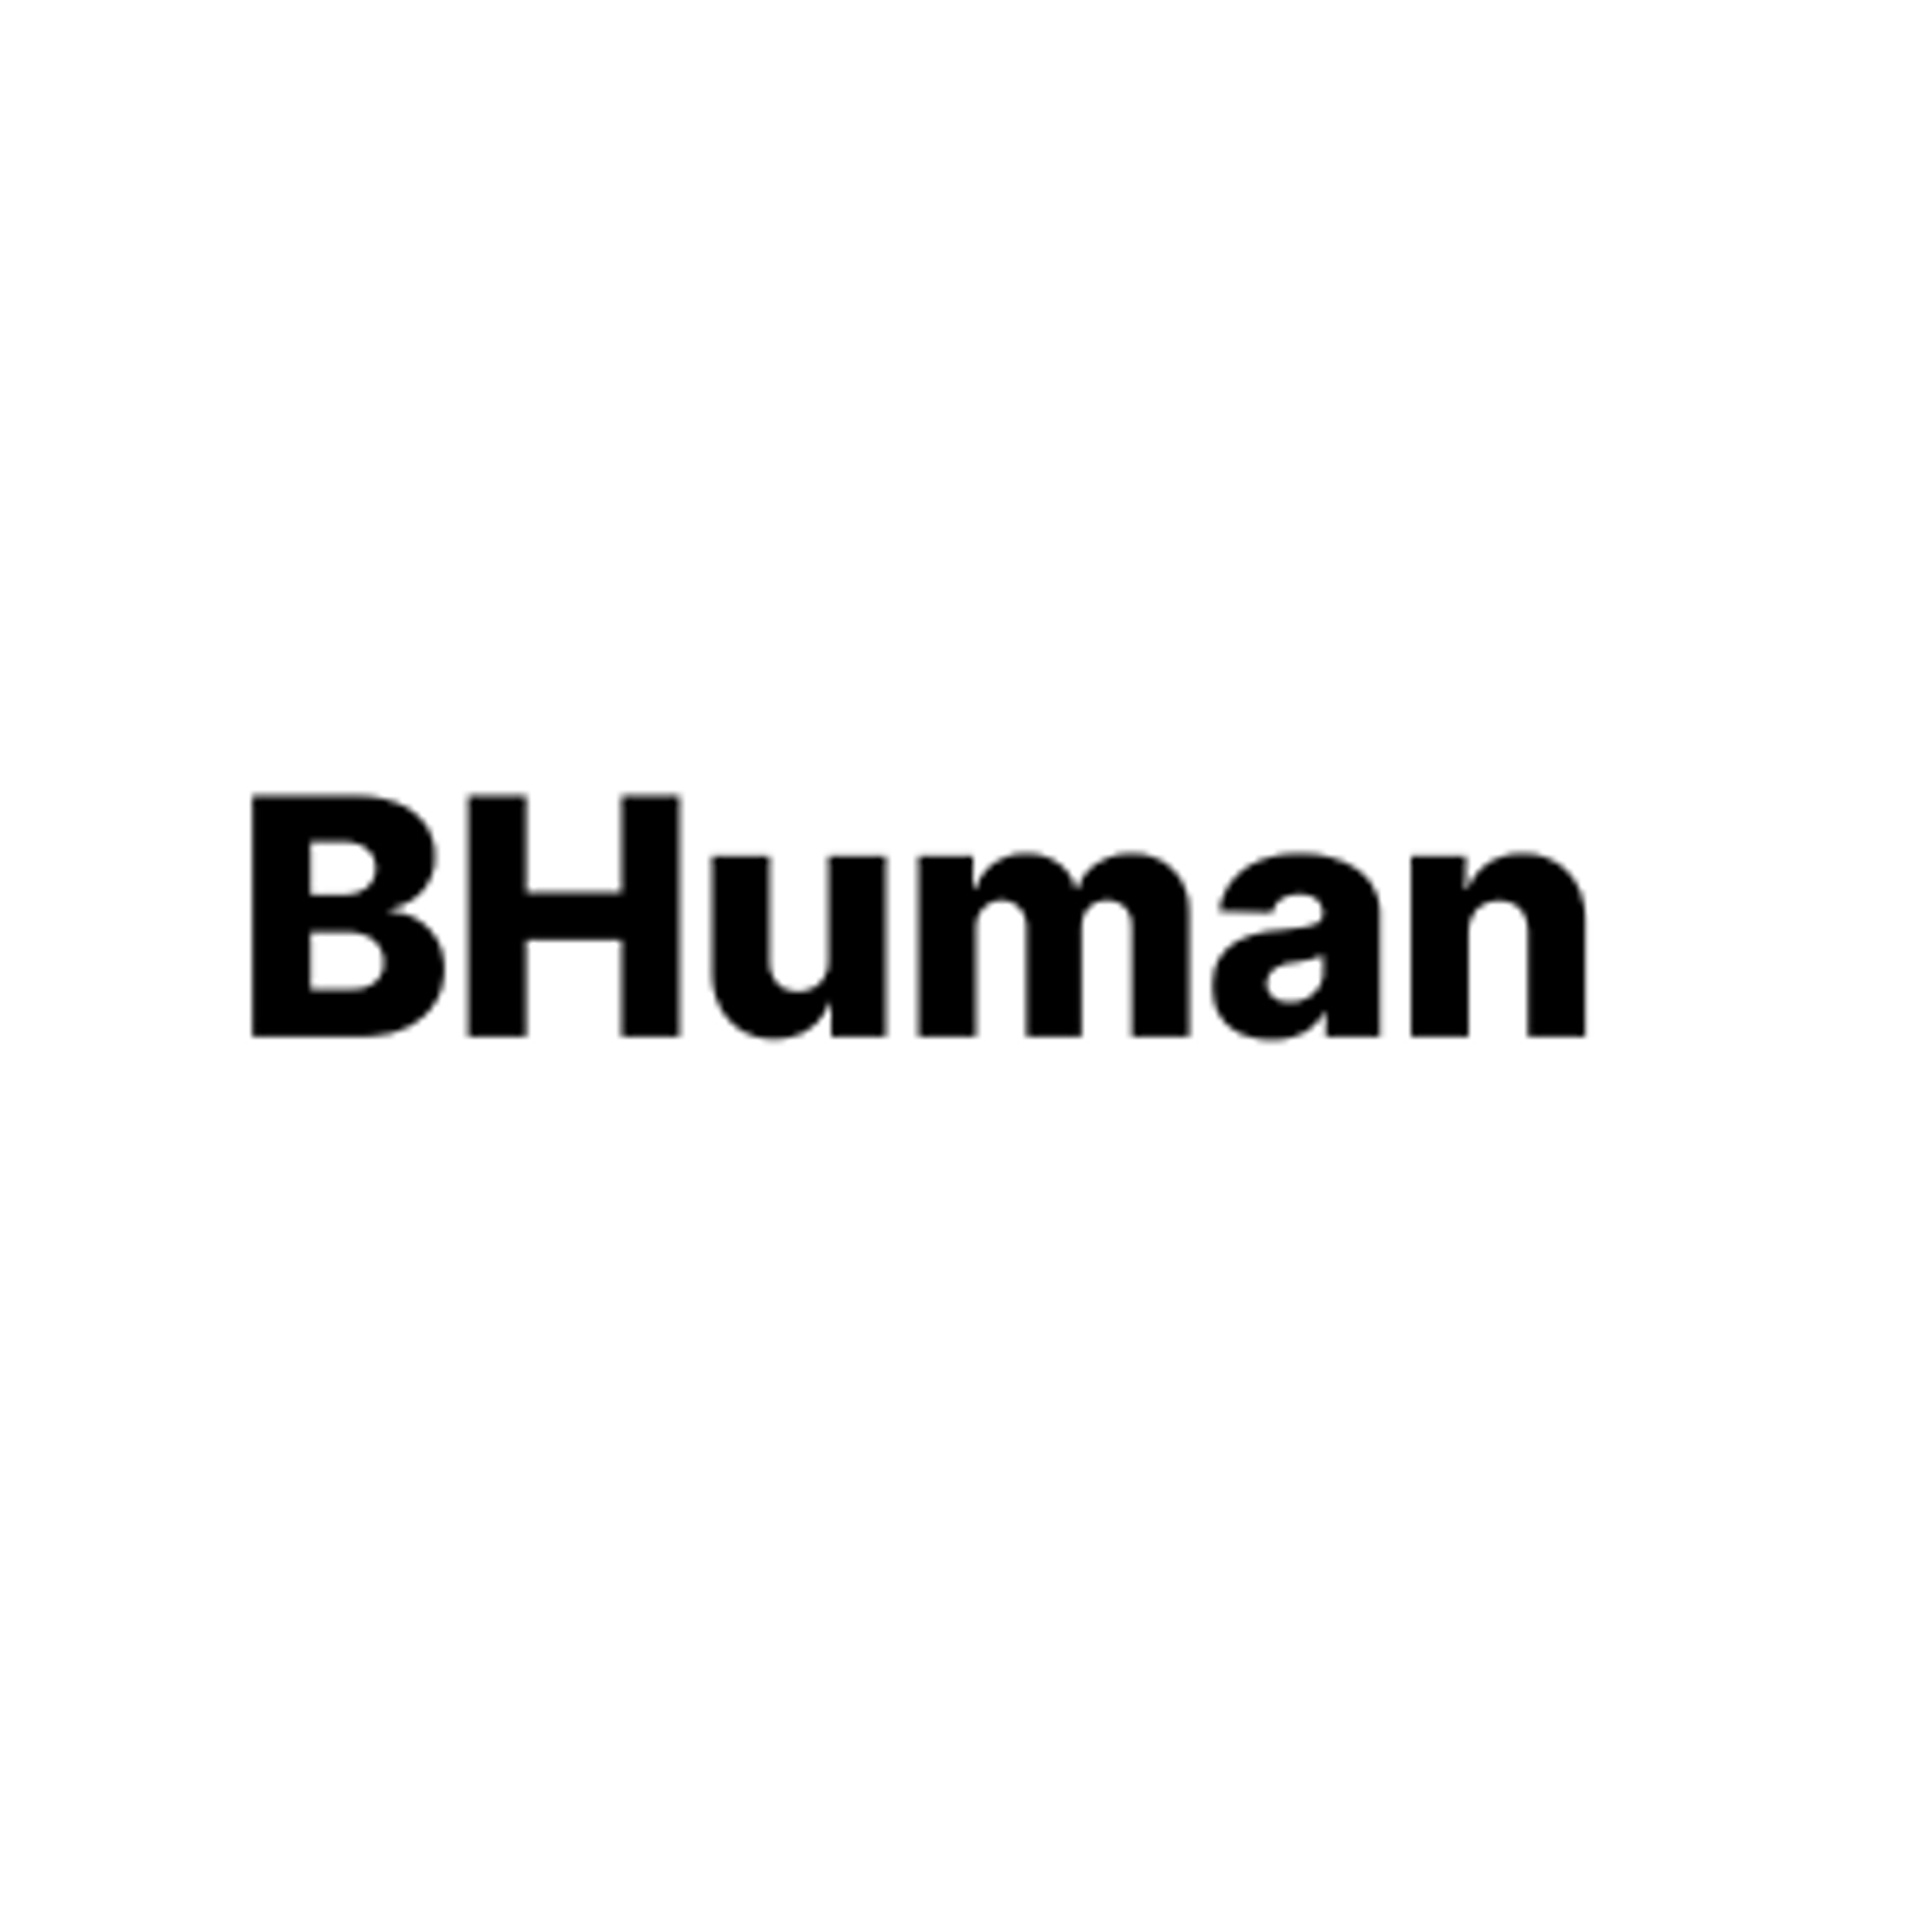 BHuman